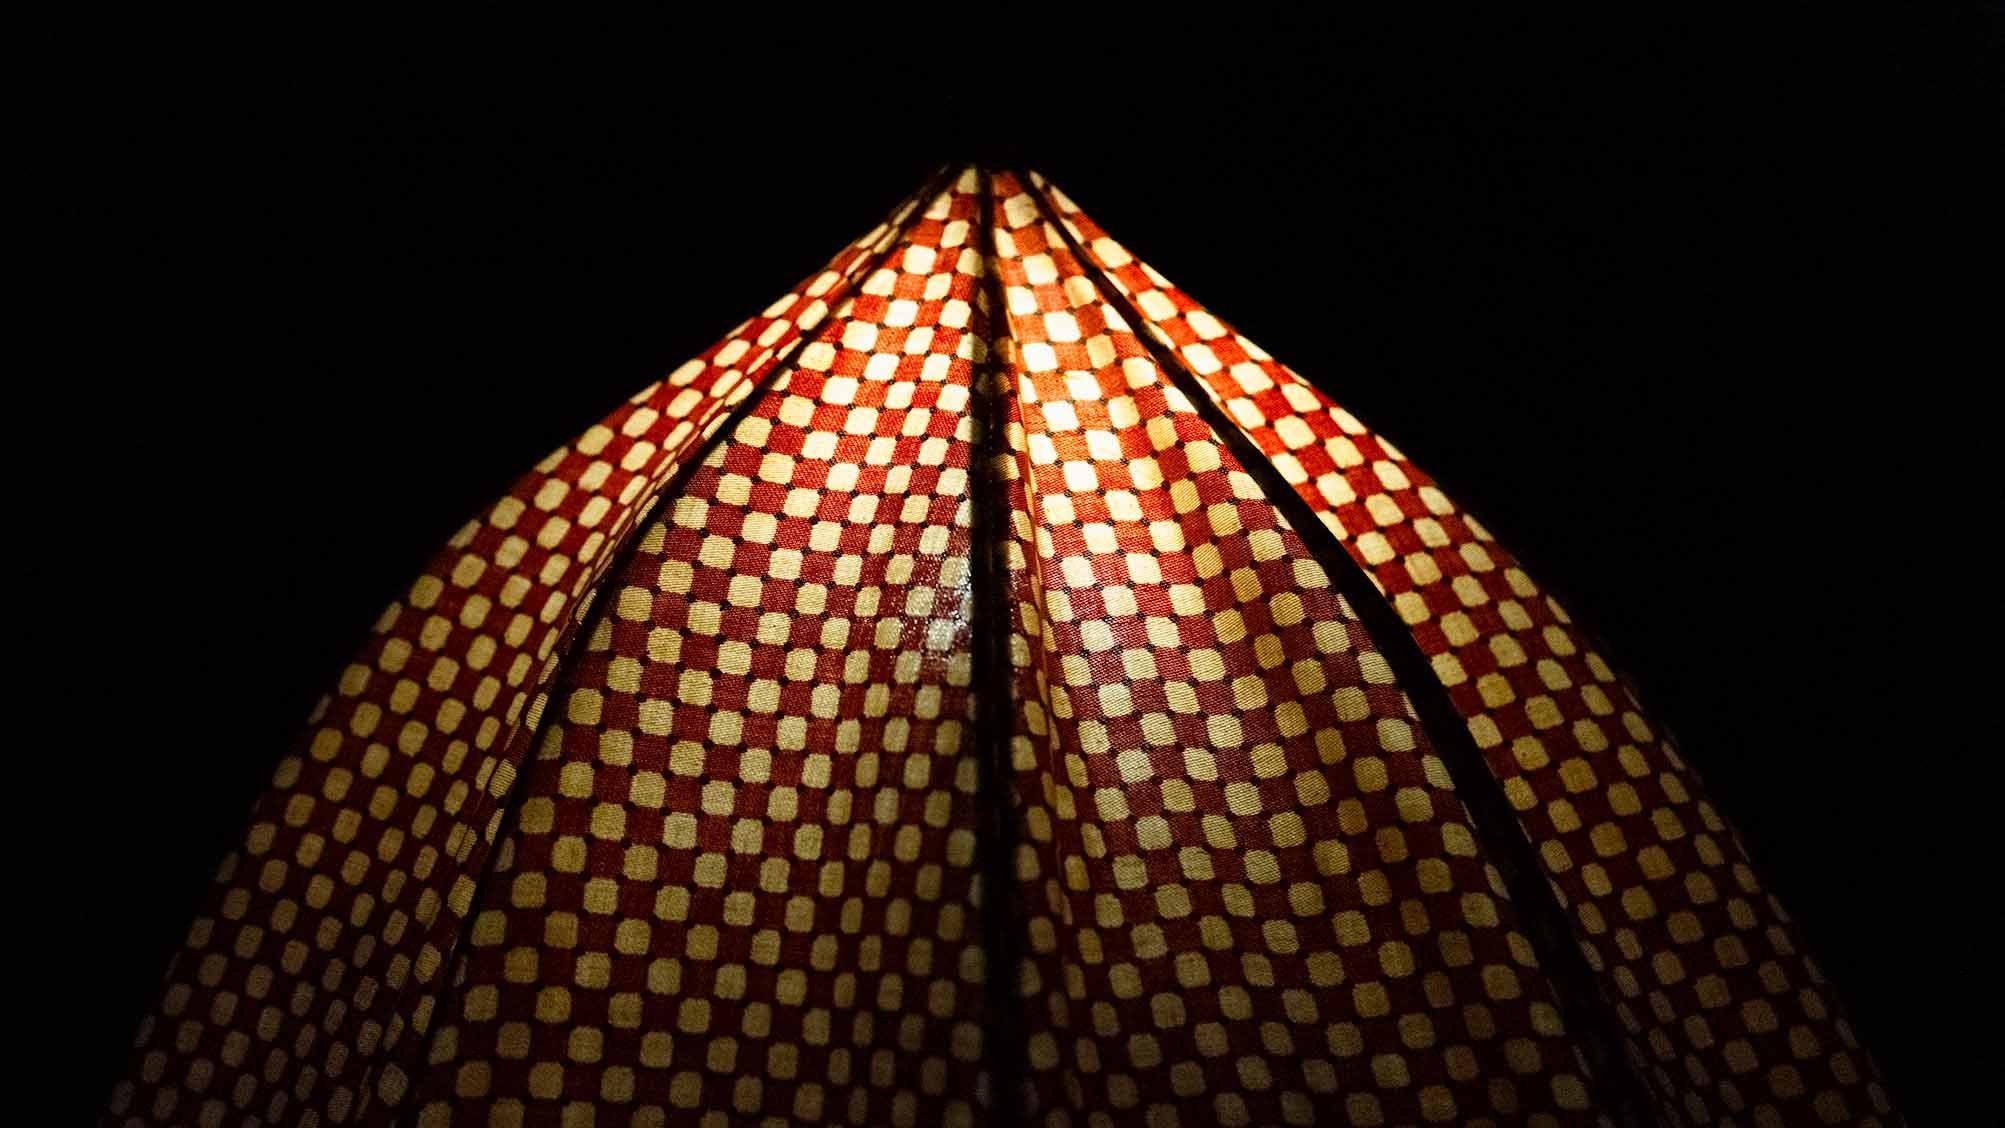 LAMPADAIRE PARAPLUIE
GEORGE KOVACS C.C. 1975

Rare lampadaire parapluie de George Kovacs avec un abat-jour à motifs orange et jaune. Design/One qui peut être ouvert et fermé comme un parapluie normal. Lampe interactive et sculpturale des années